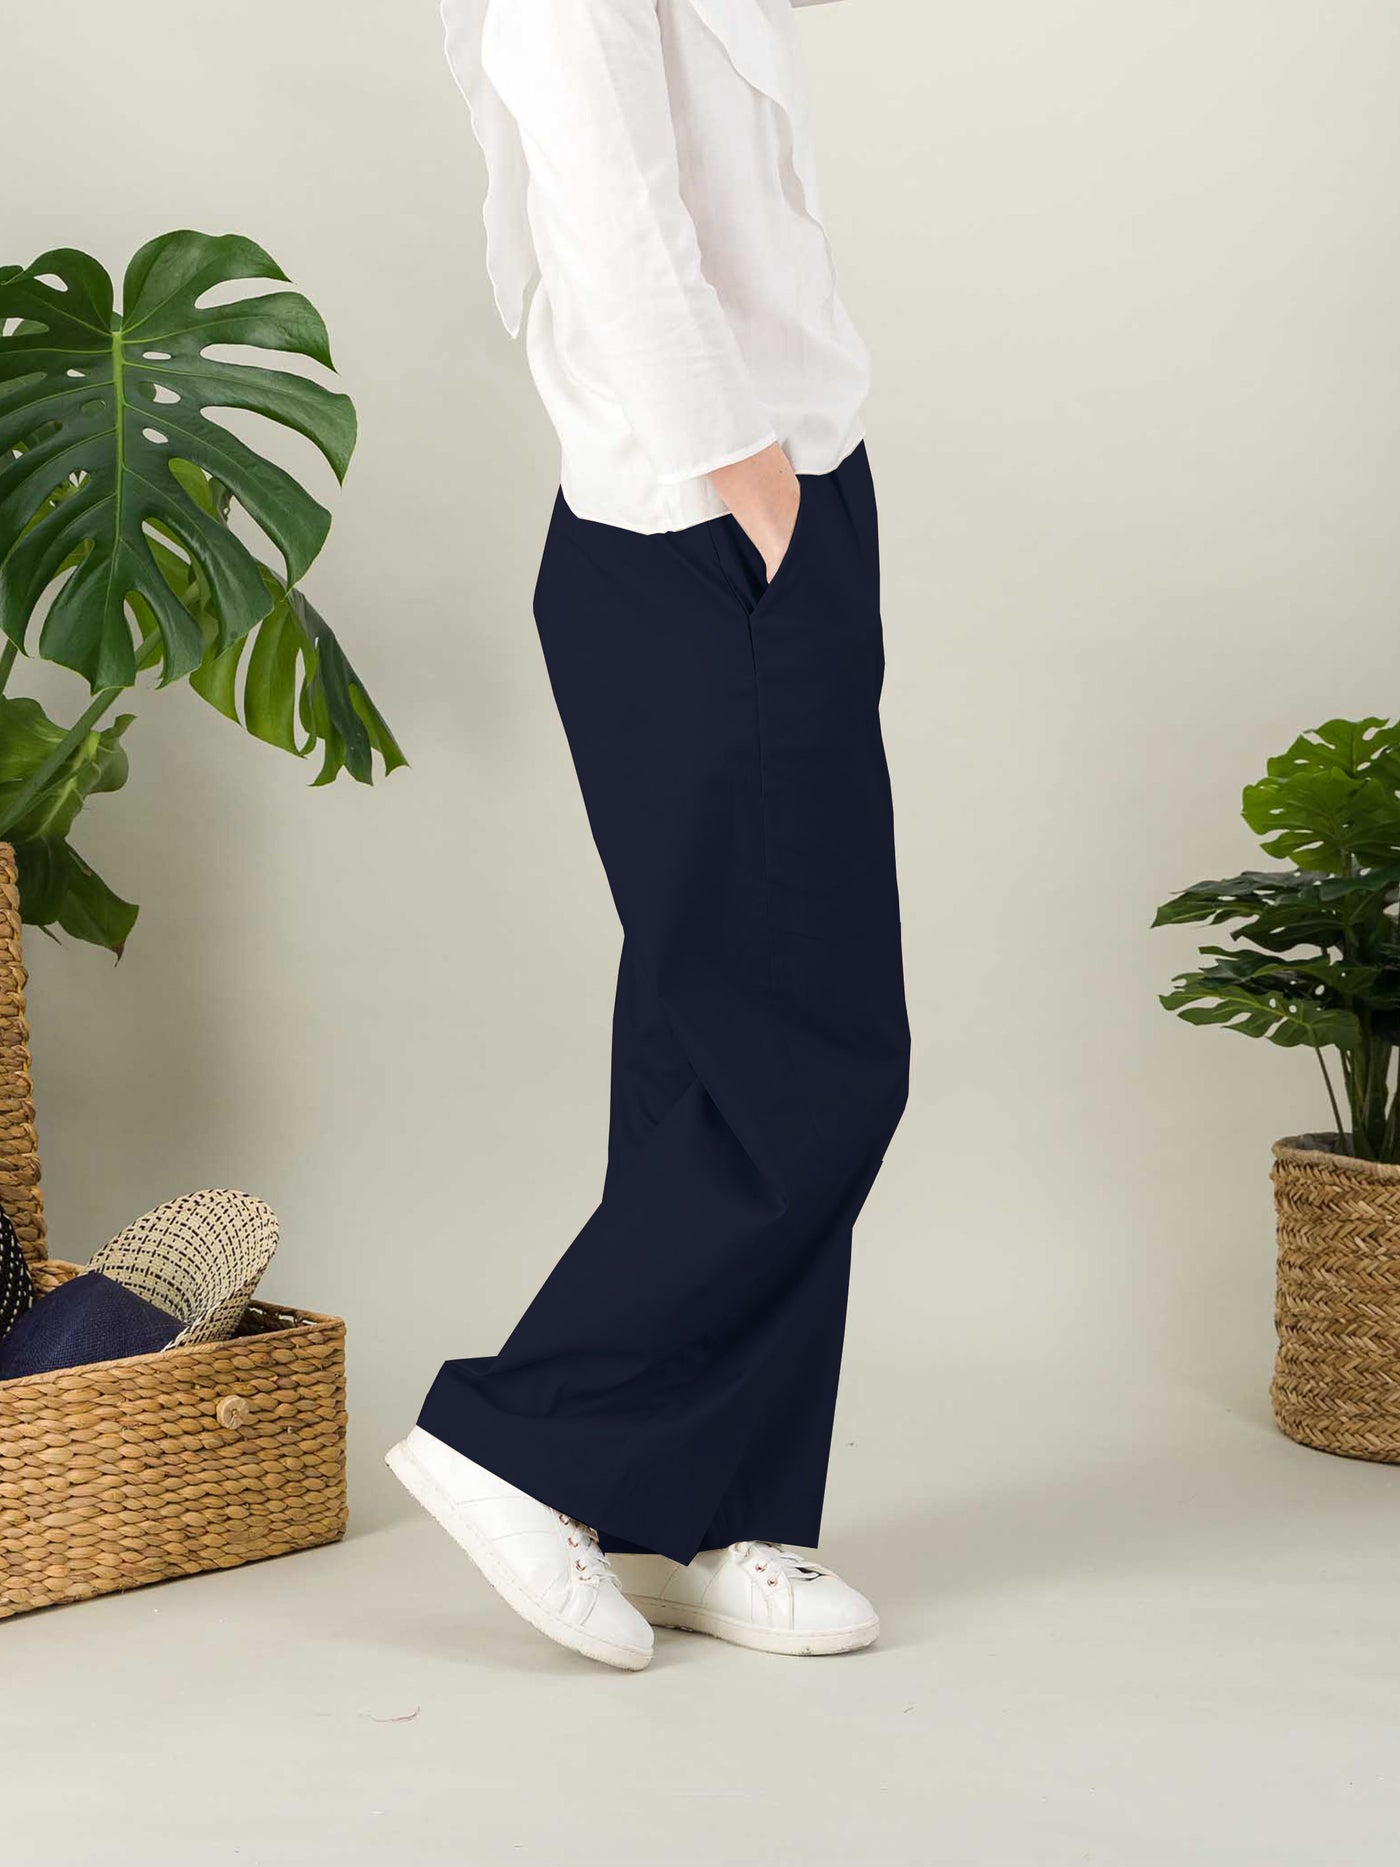 Pantalon bleu marine avec poches italiennes de chaque côtés